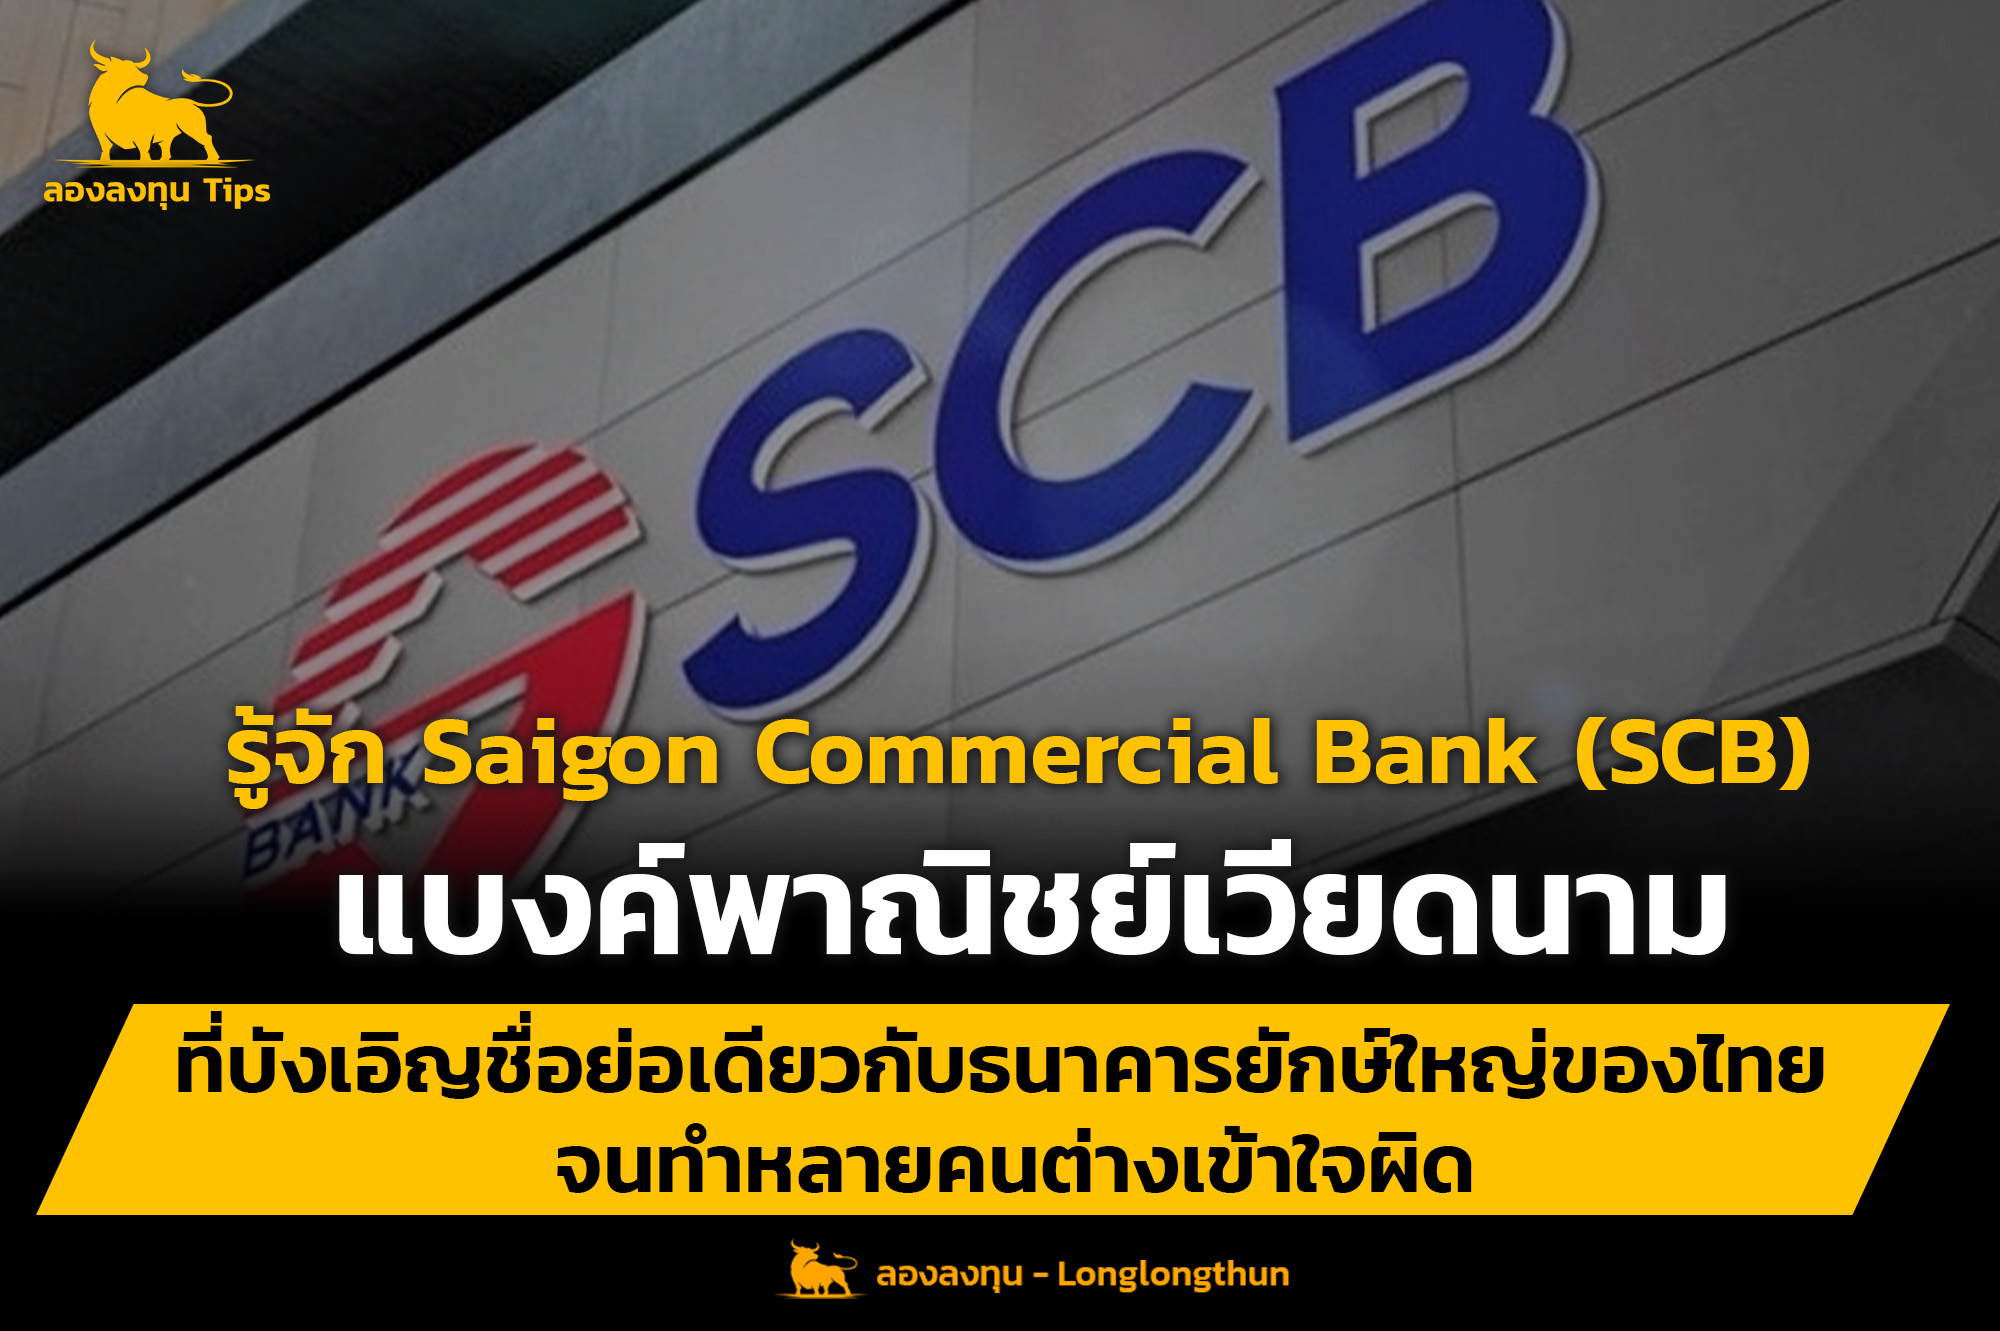 รู้จัก Saigon Commercial Bank (SCB) แบงค์พาณิชย์เวียดนาม ที่บังเอิญชื่อย่อเดียวกับธนาคารยักษ์ใหญ่ของไทย จนทำหลายคนต่างเข้าใจผิด